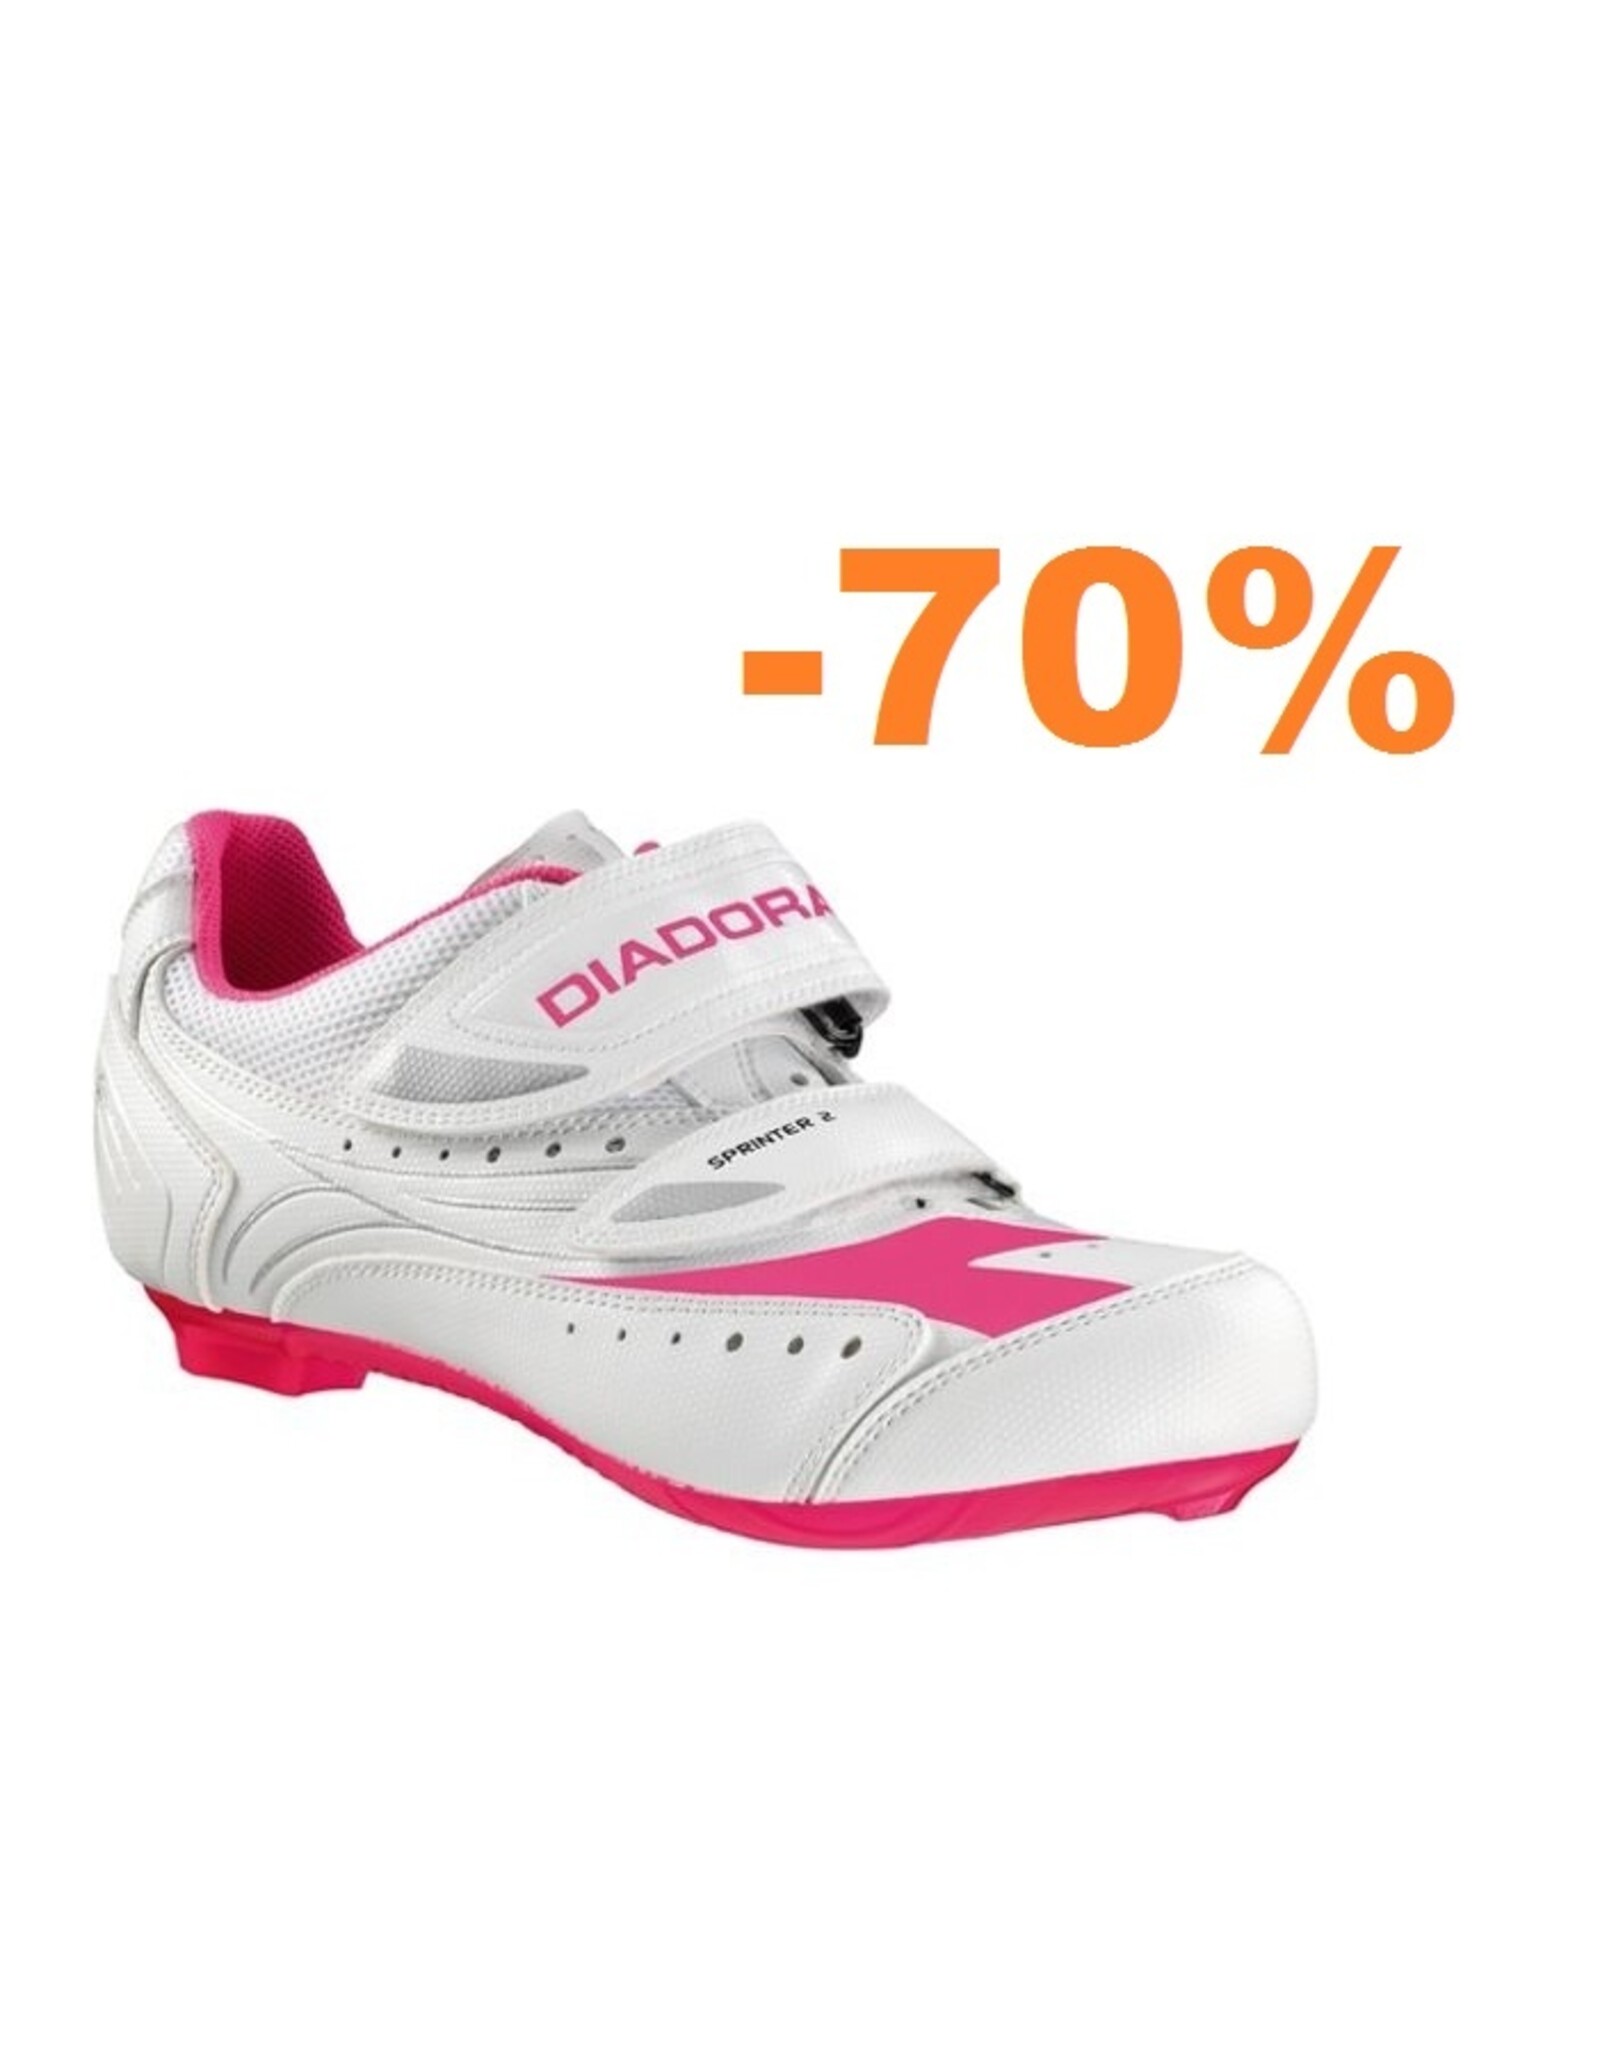 Diadora Shoes Diadora Sprinter2 white/pink #37